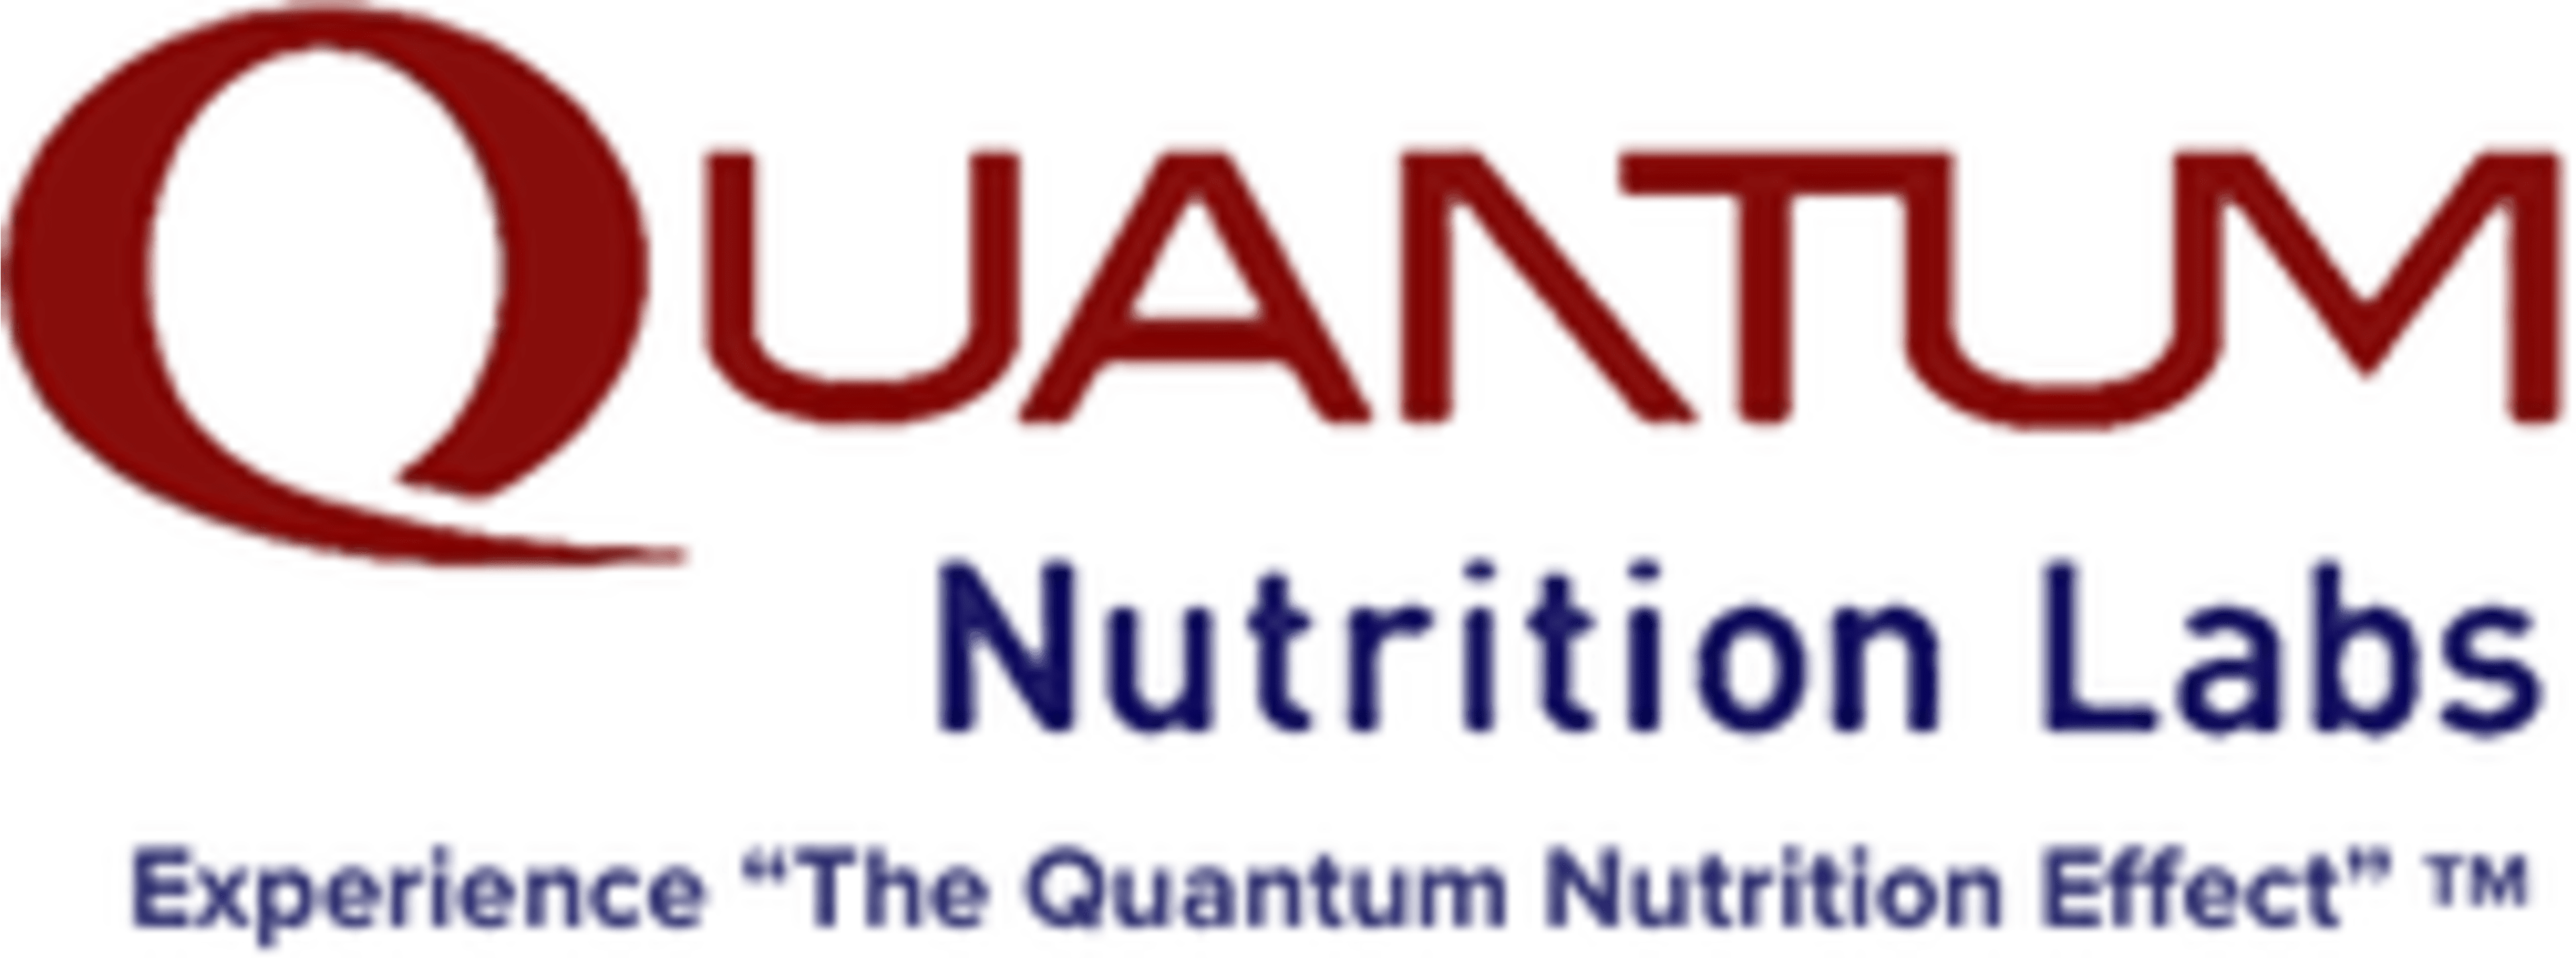 Quantum Nutrition Labs Code